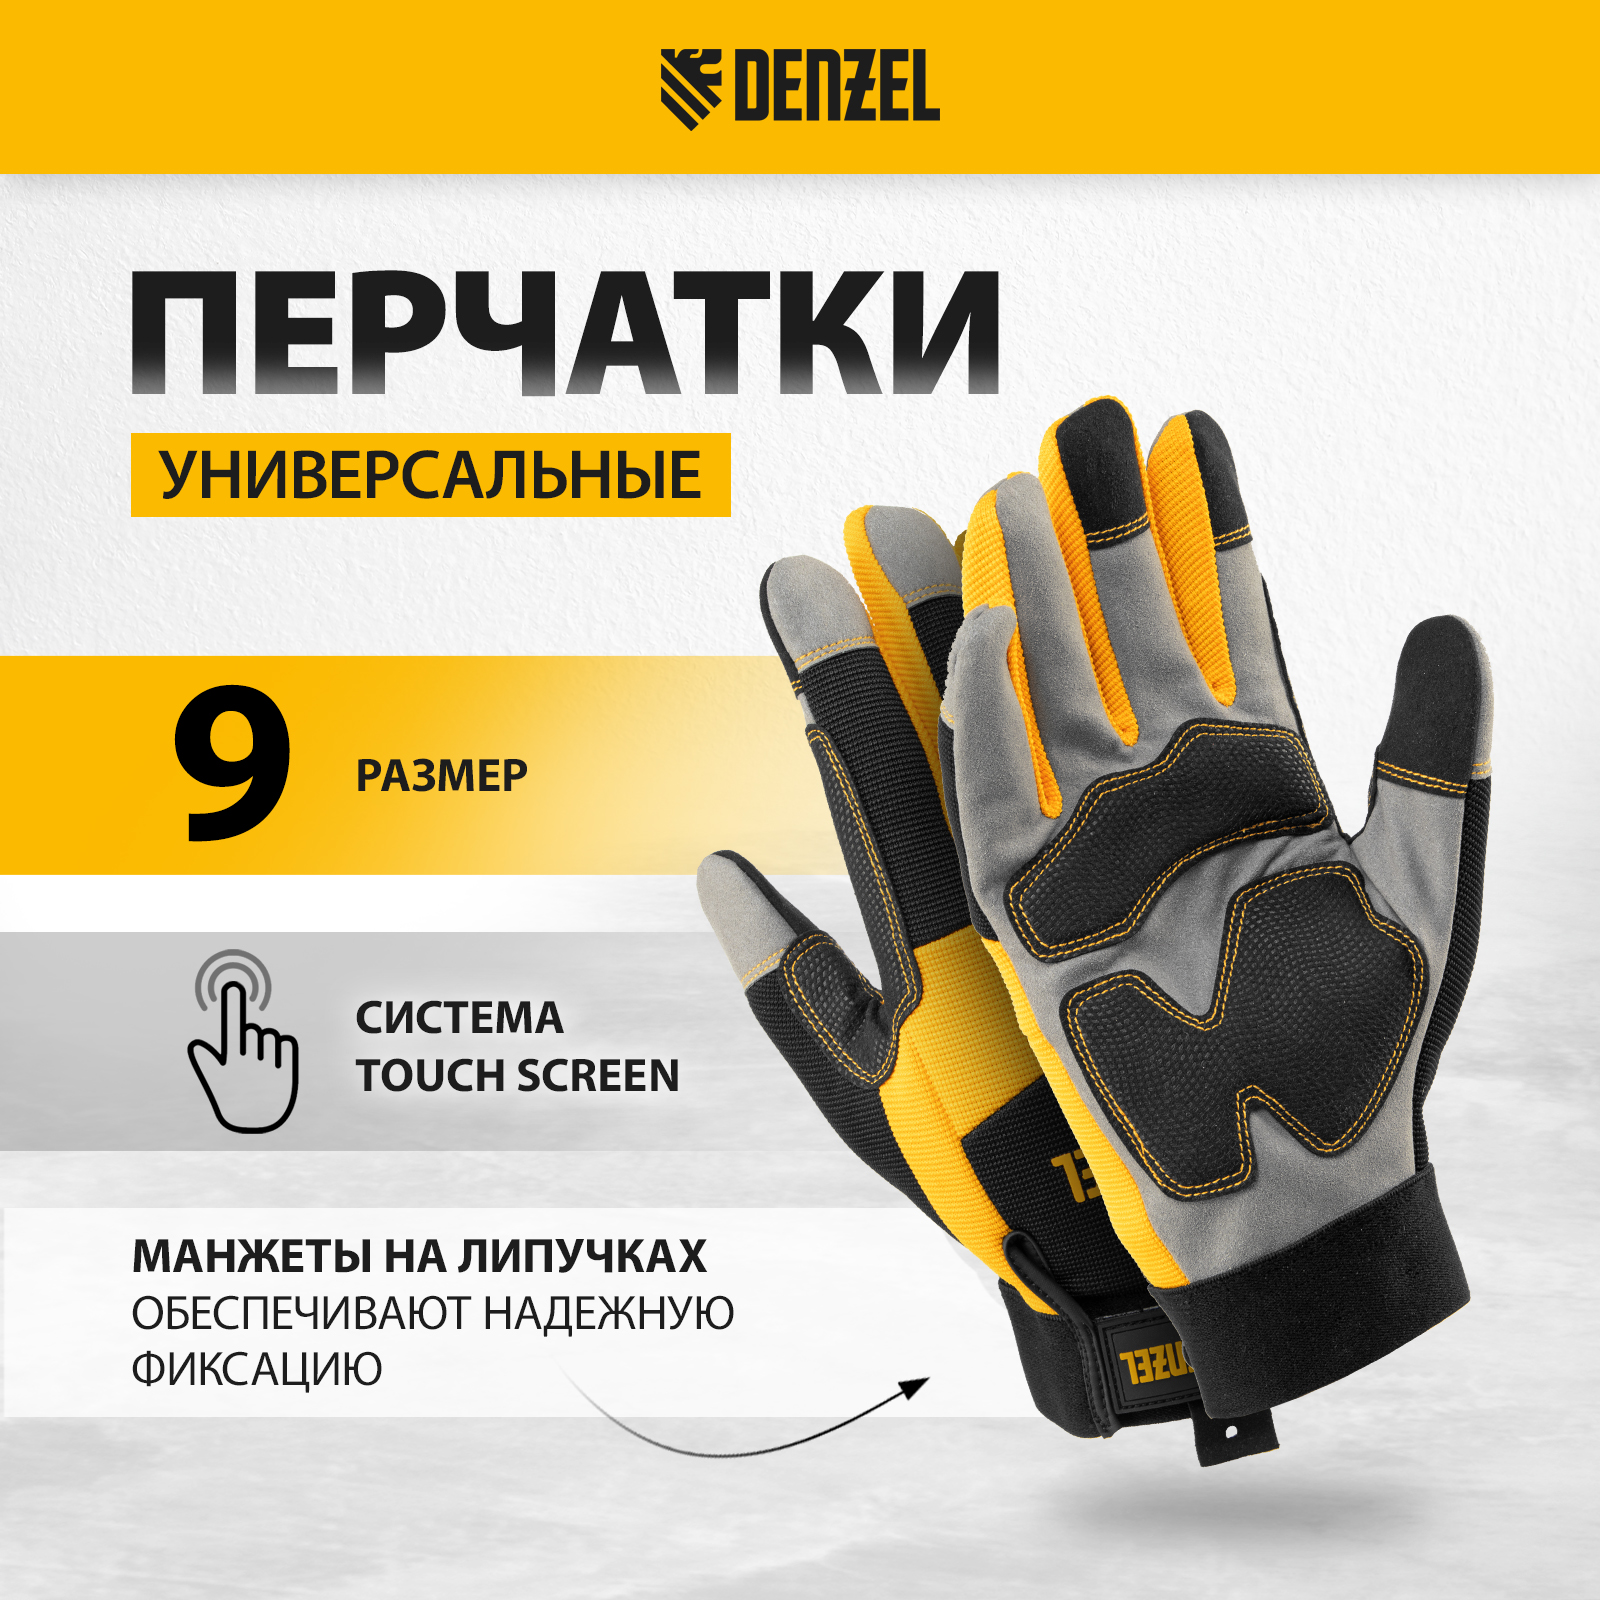 Перчатки универсальные DENZEL усиленные размер 9 67990 перчатки универсальные denzel усиленные с защитными накладками 68003